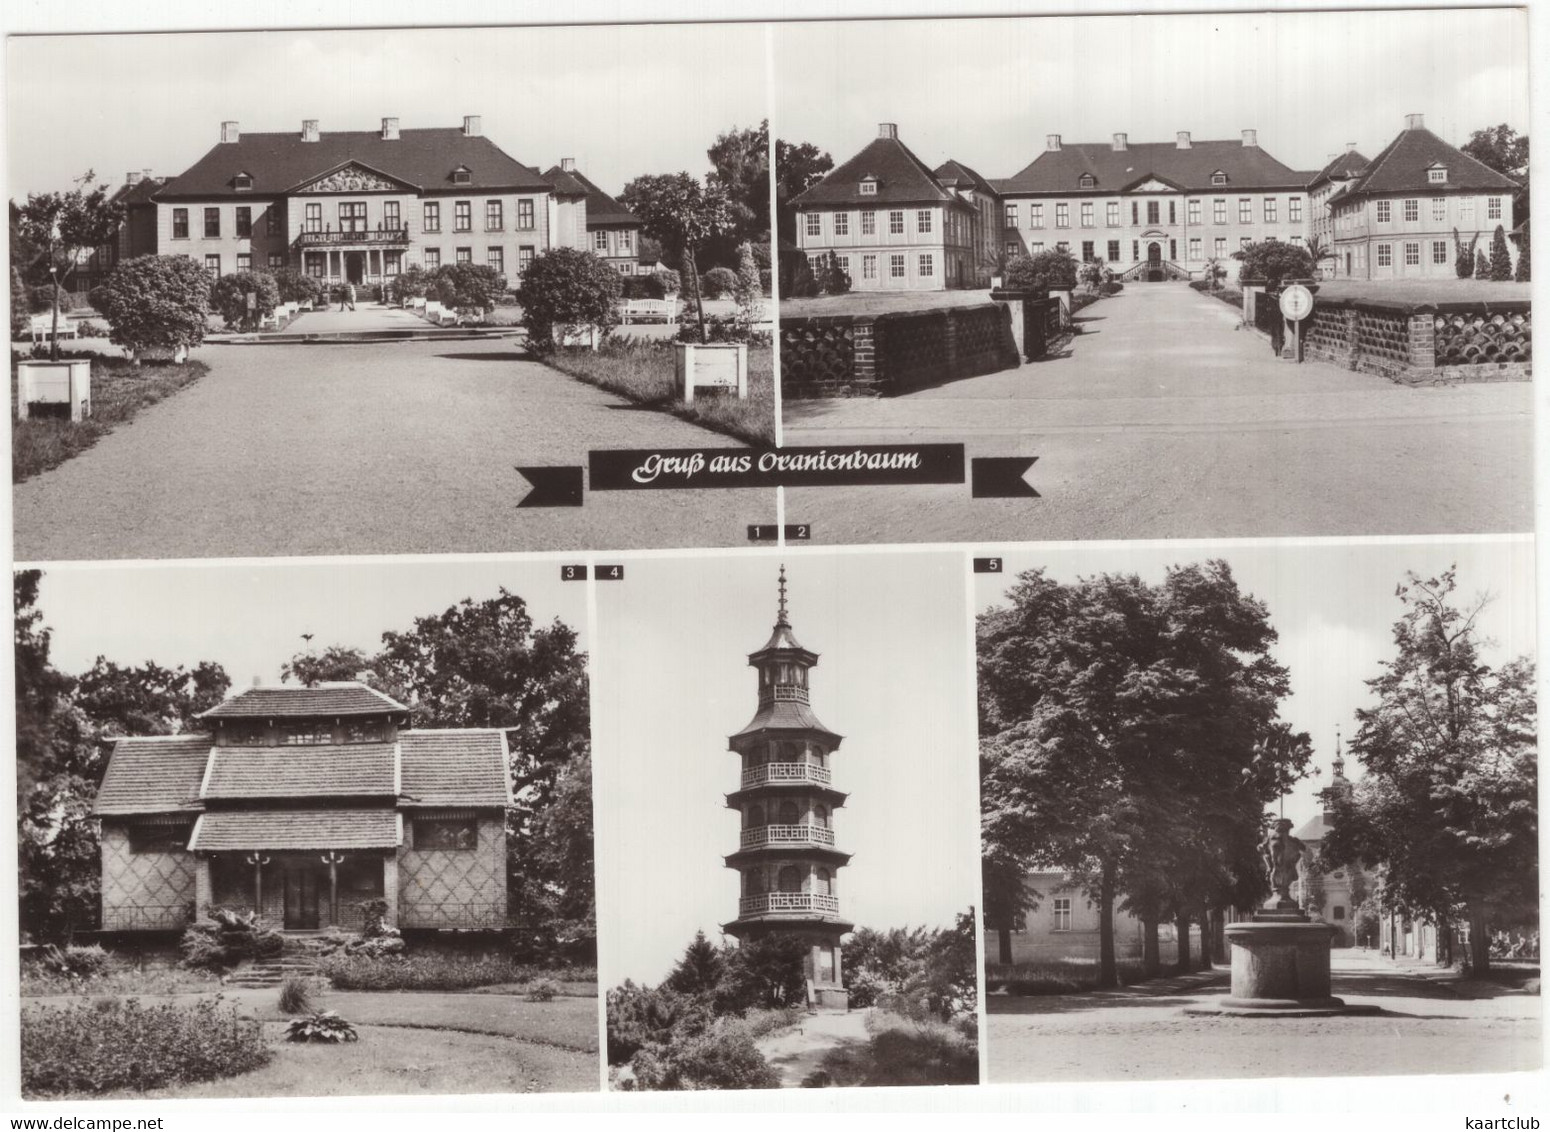 Oranienbaum: Teehäuschen, Glockenturm, Schloß (Hist. Staatsarchiv), Museum Und Bibliothek, Pagode - (D.D.R.) - Oranienburg